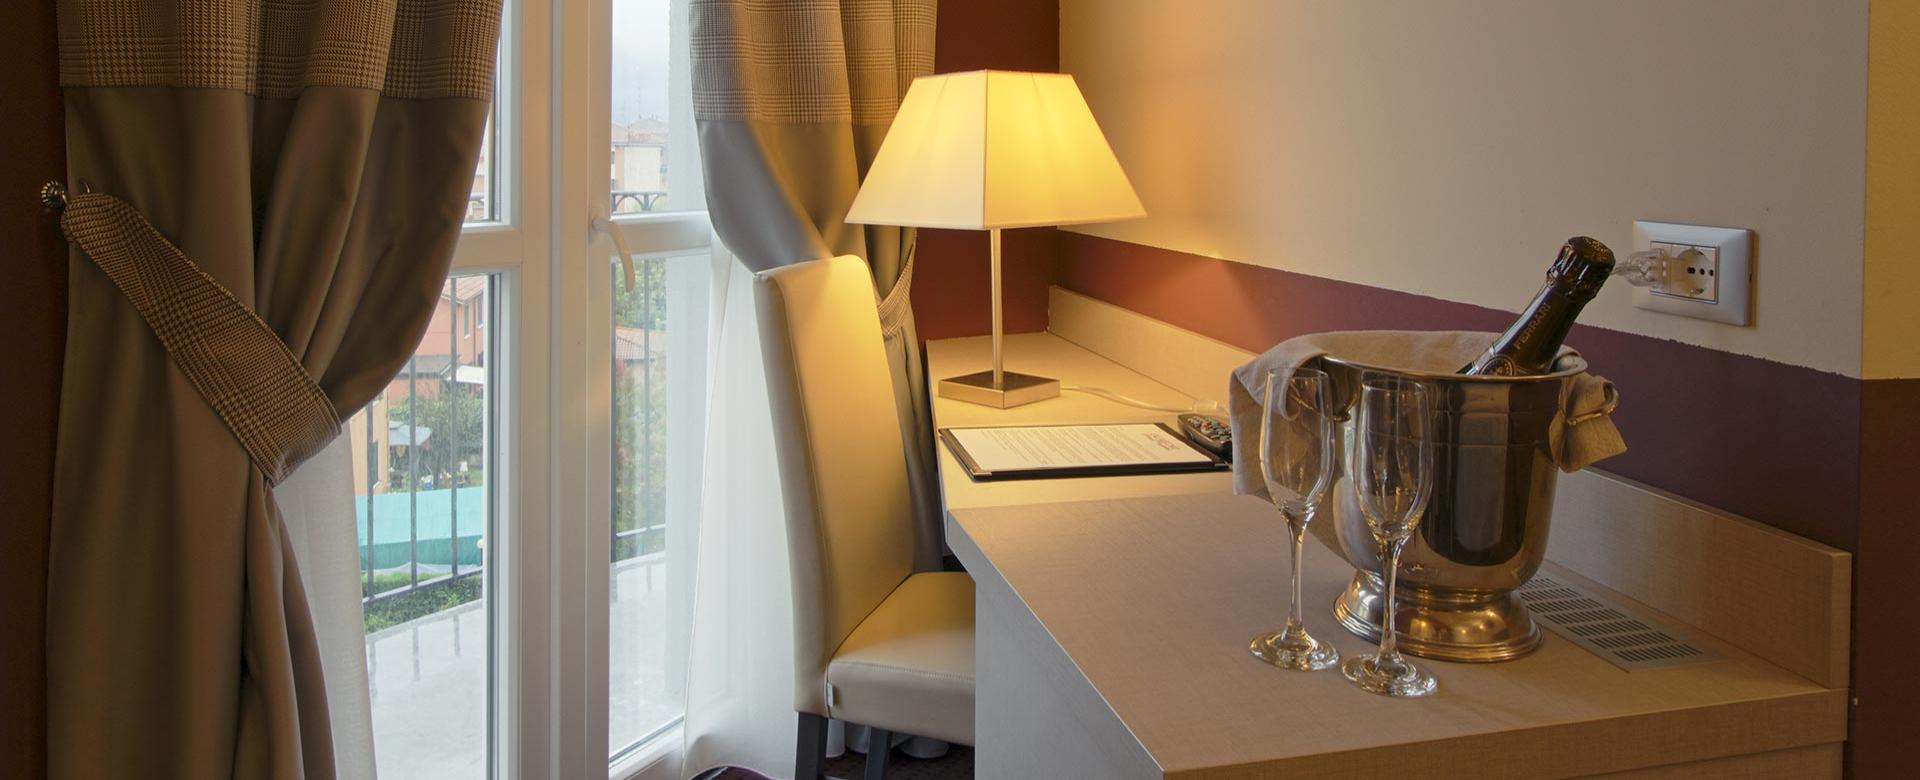 hotelcalzavecchio en rooms 006